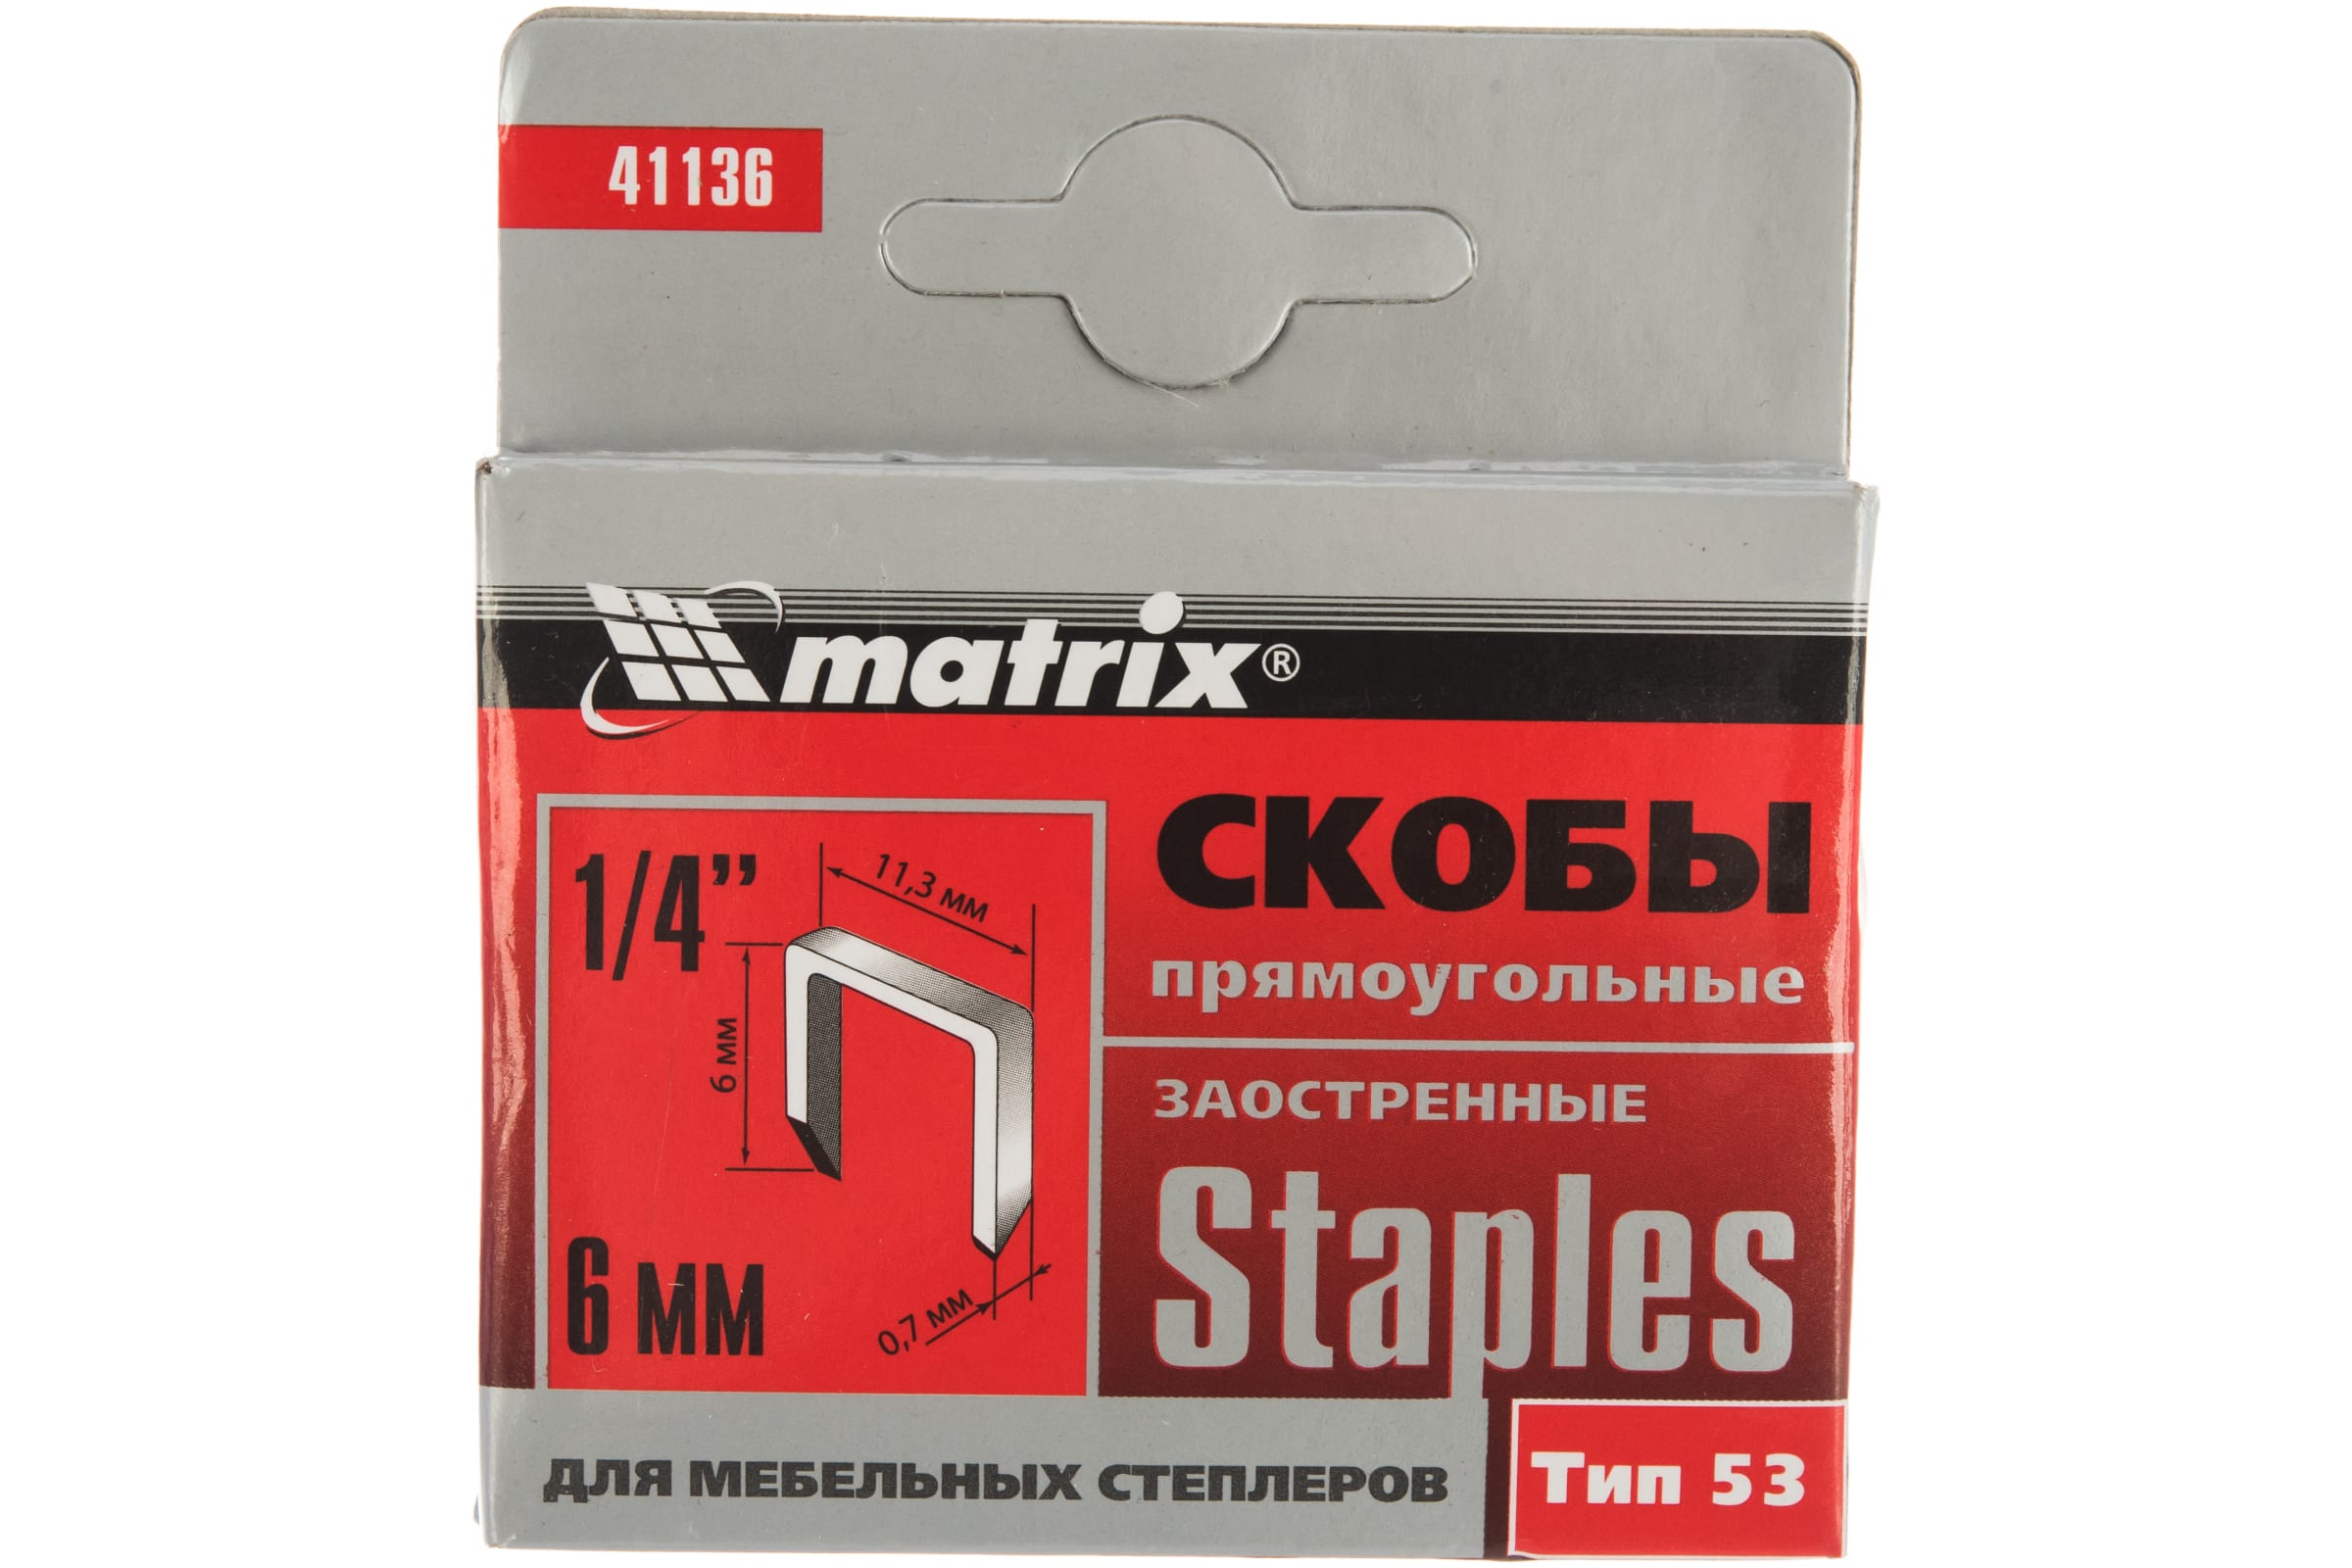 Скобы для электростеплера MATRIX 41136 скобы для степлеров matrix